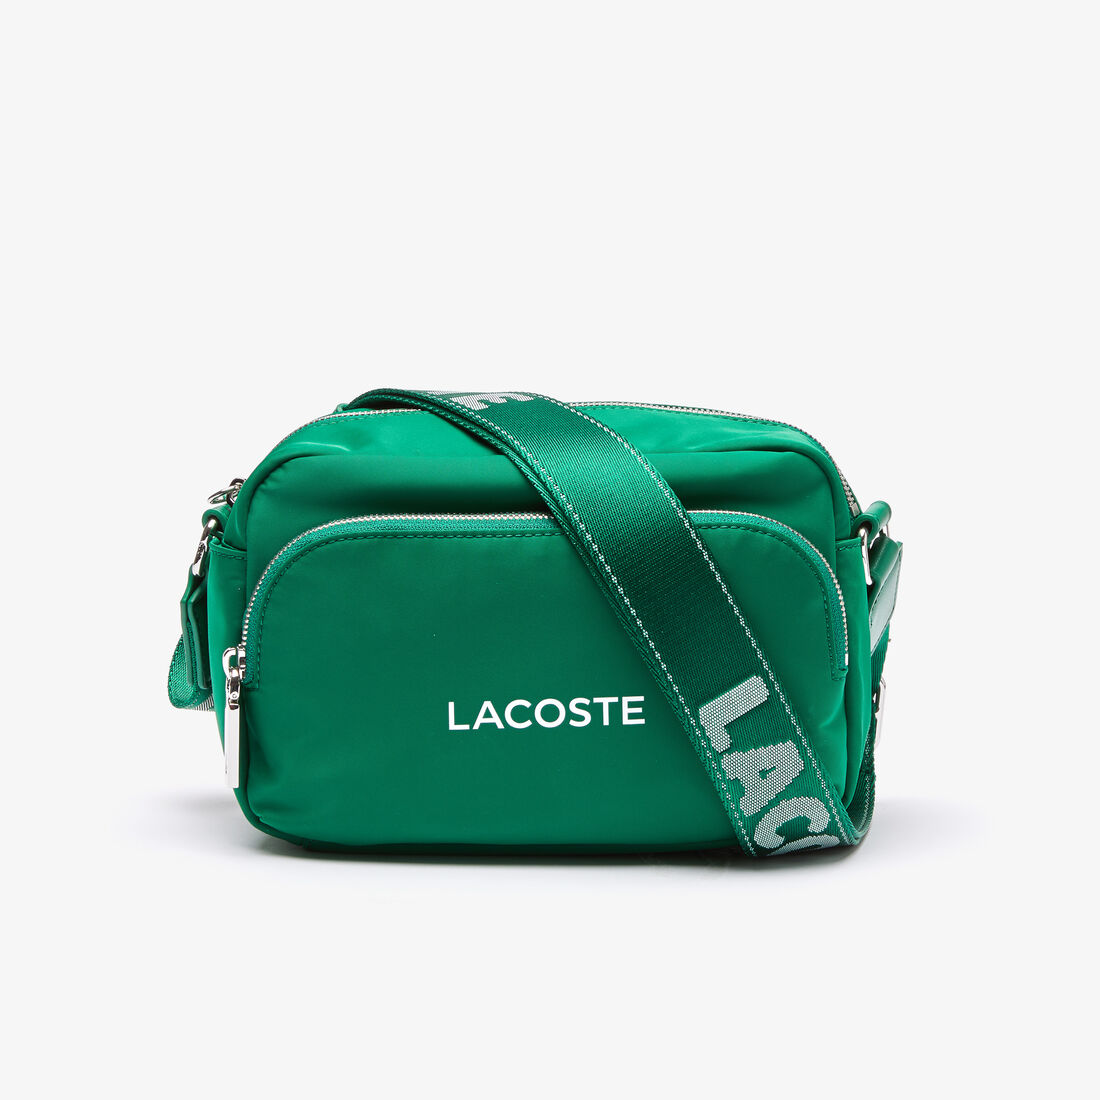 Unisex Branded Nylon Crossover Bag